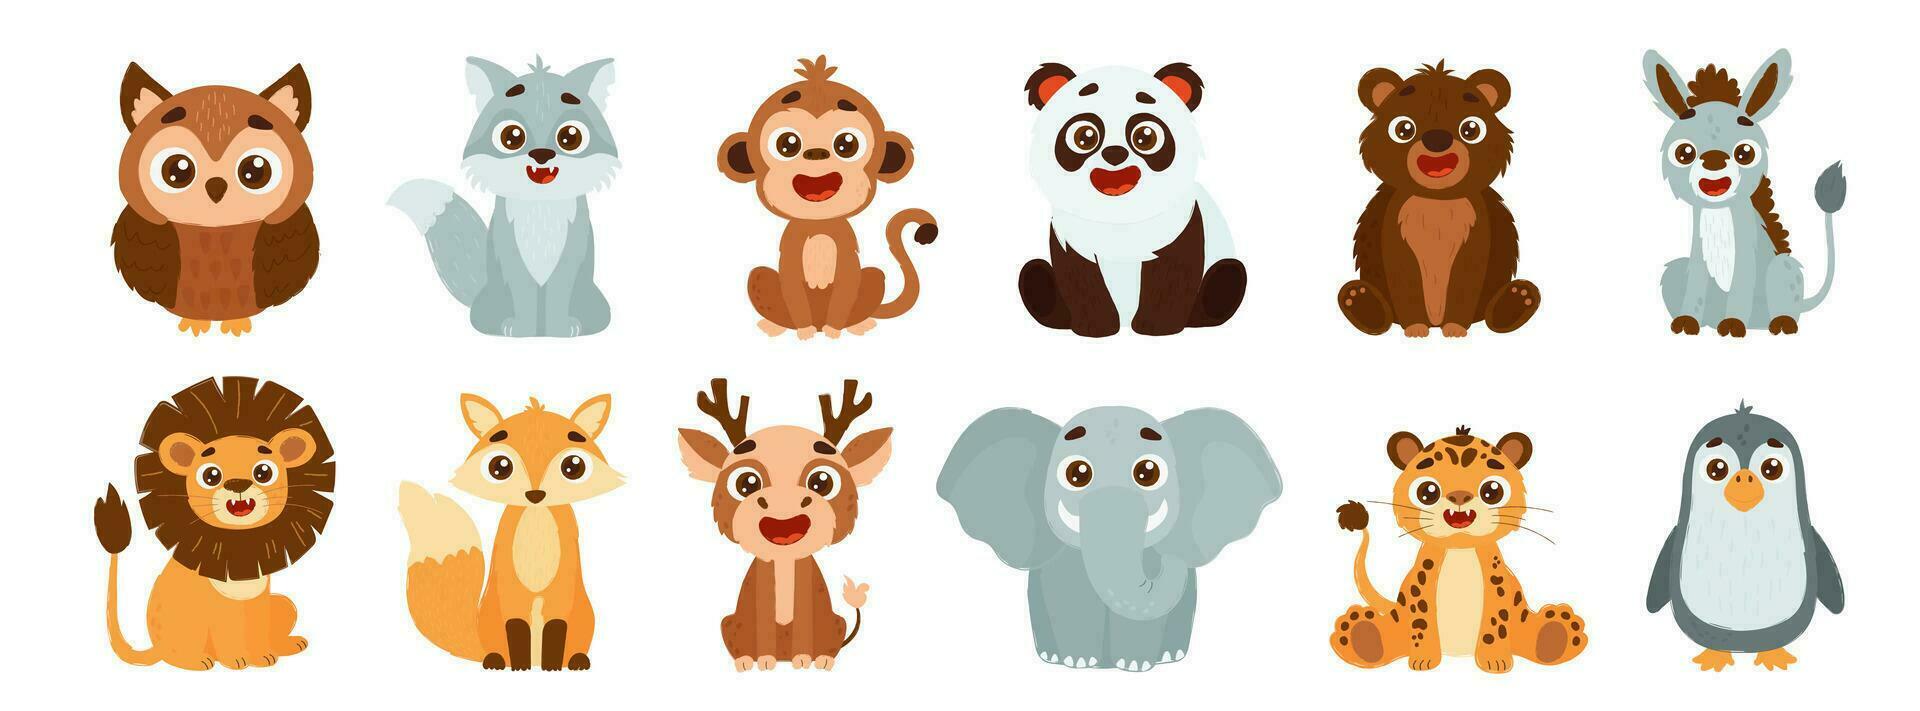 reeks van schattig wild dieren inclusief leeuw, vos, hert, olifant, tijger, pinguïn, uil, wolf, aap, panda, beer en ezel. vector kinderen stijl illustratie van Woud dieren.